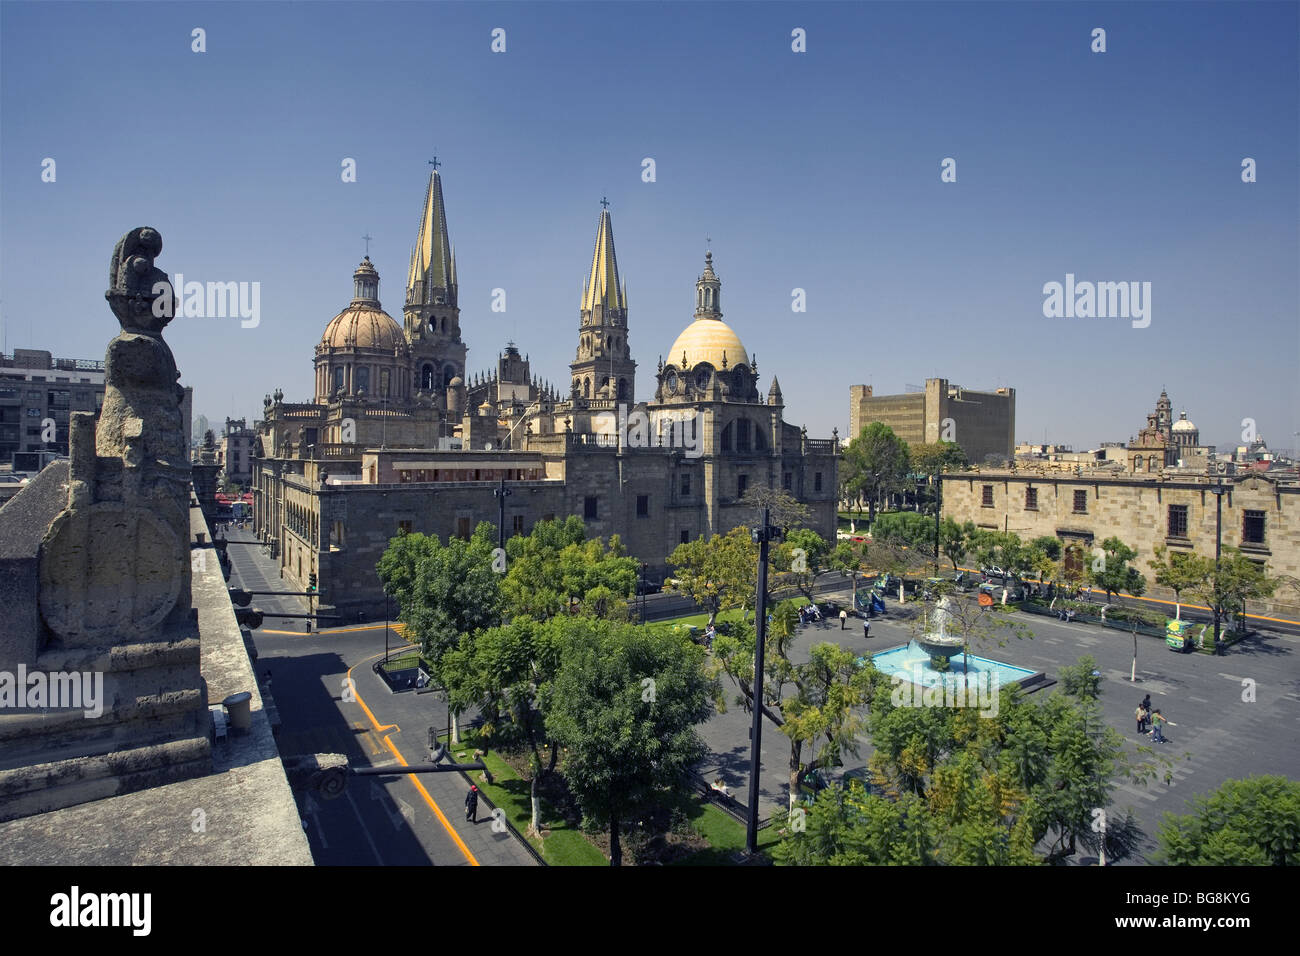 México. GUADALAJARA. Vista parcial de la Plaza de Armas con la Catedral. Foto de stock